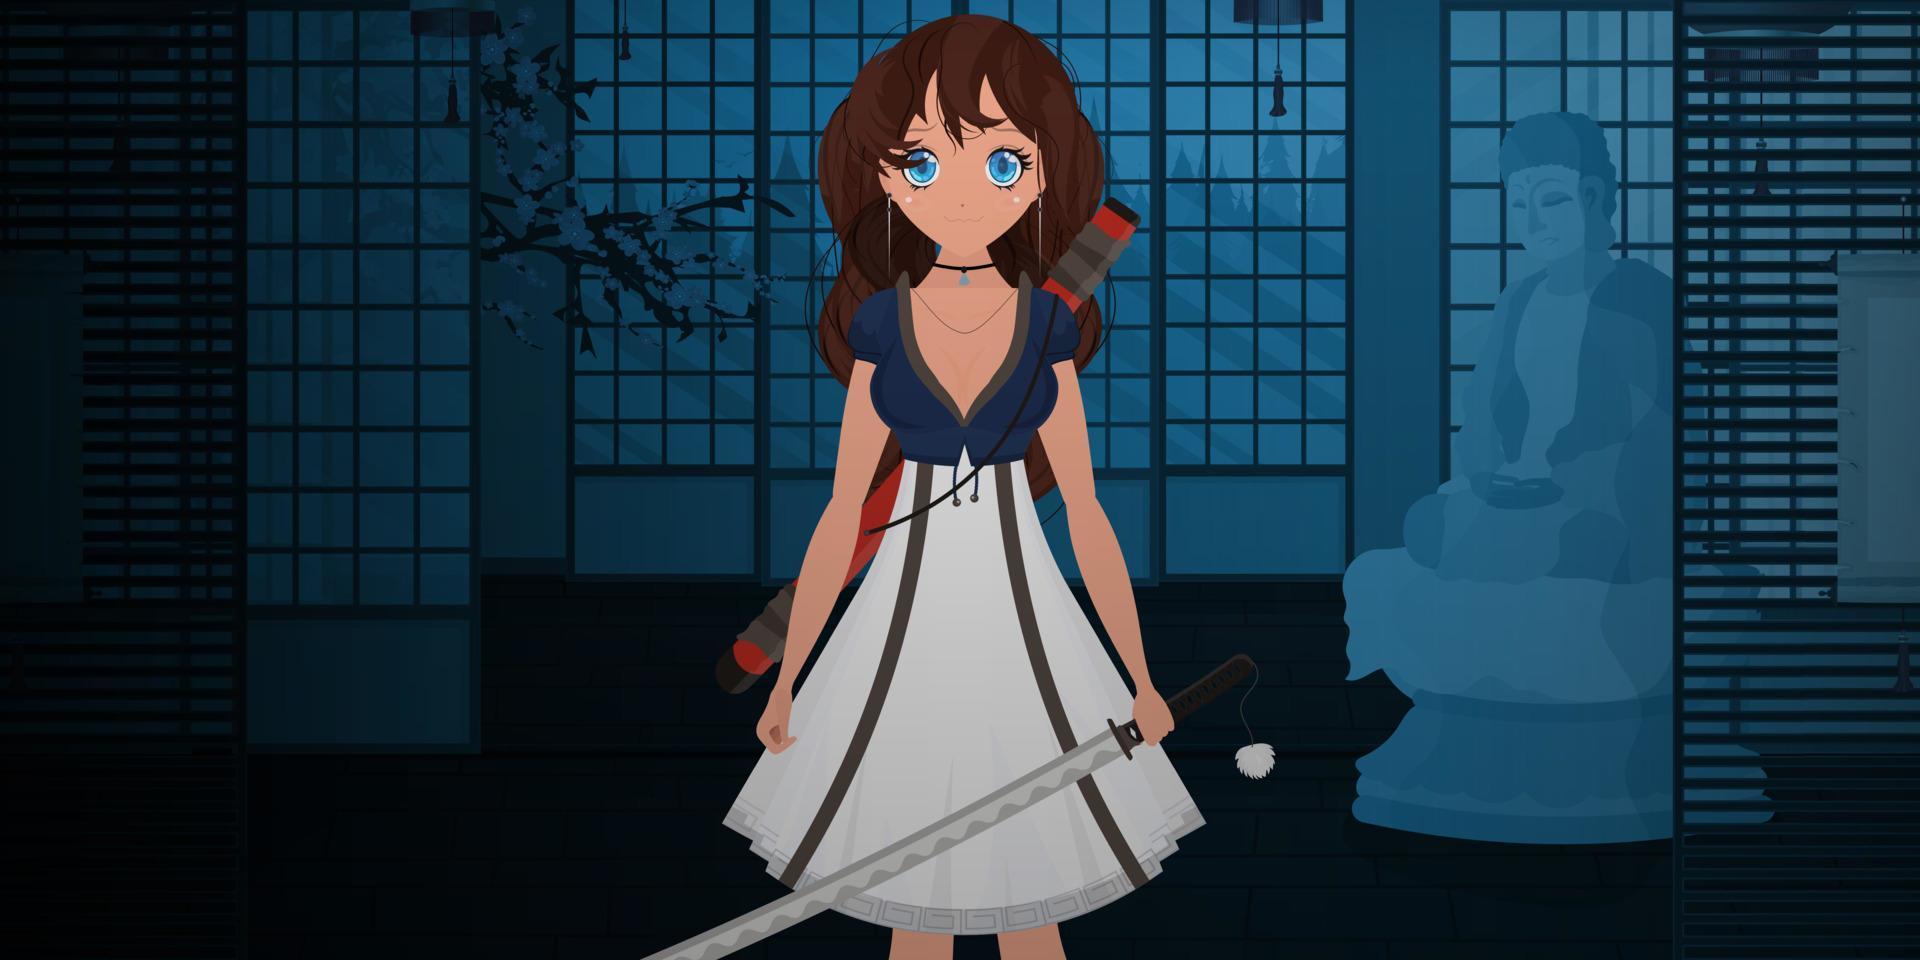 une fille avec un katana dans une robe bleue et blanche se tient debout, la nuit dans une chambre japonaise. femme samouraï anime. style de dessin animé, illustration vectorielle. vecteur